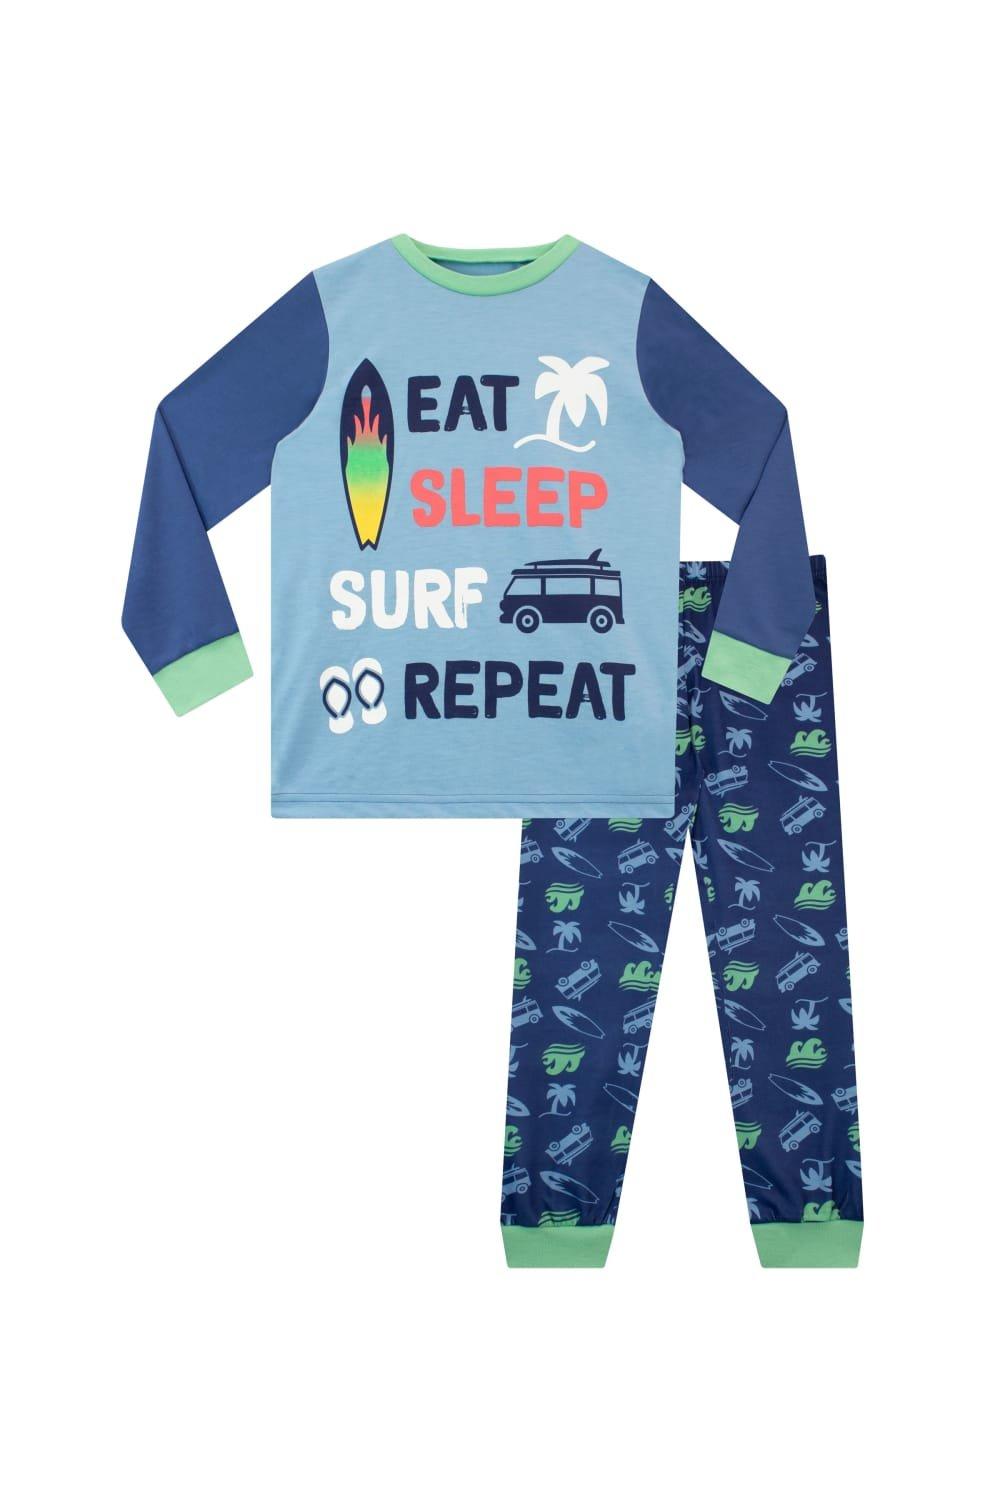 Eat Sleep Repeat Surf Pyjamas